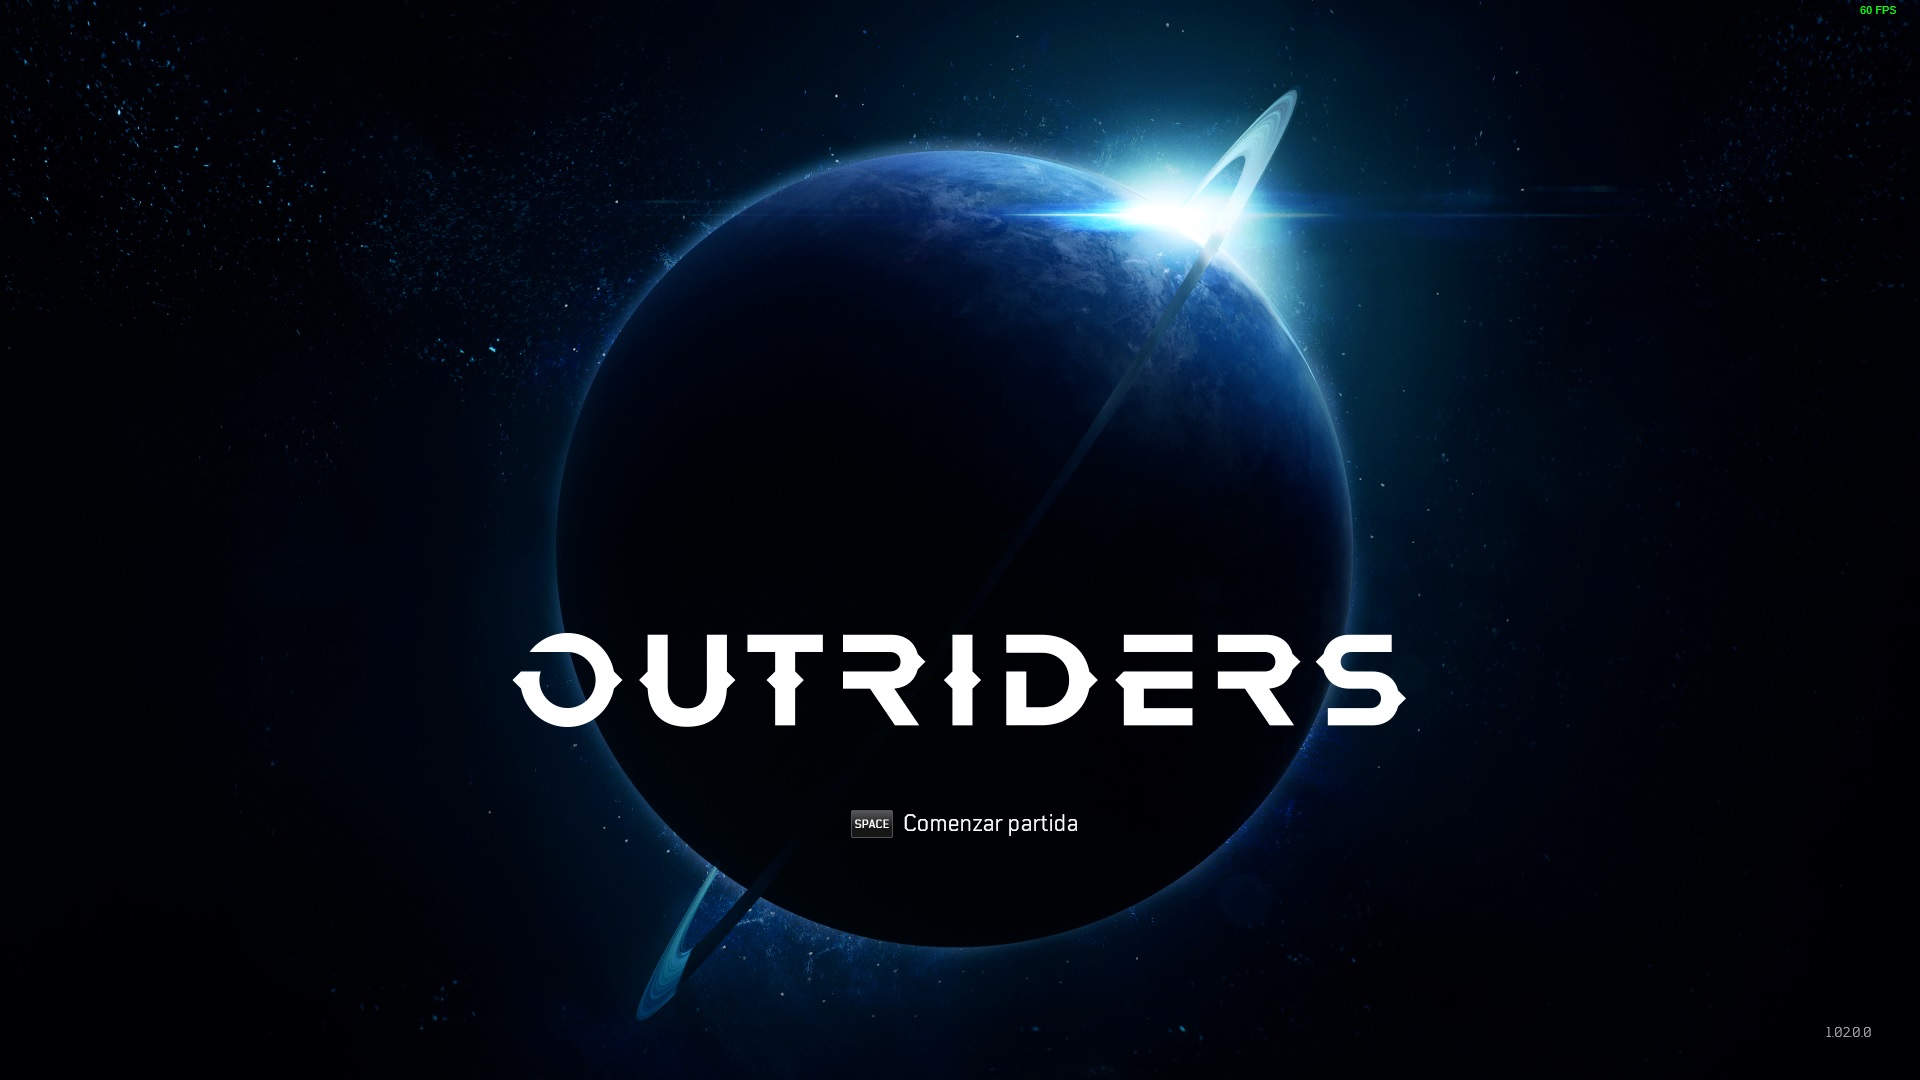 Así que Outriders llegó al mercado con muchas expectativas de lo que podía entregarnos a los gamers. Square Enix nos dio una copia de review